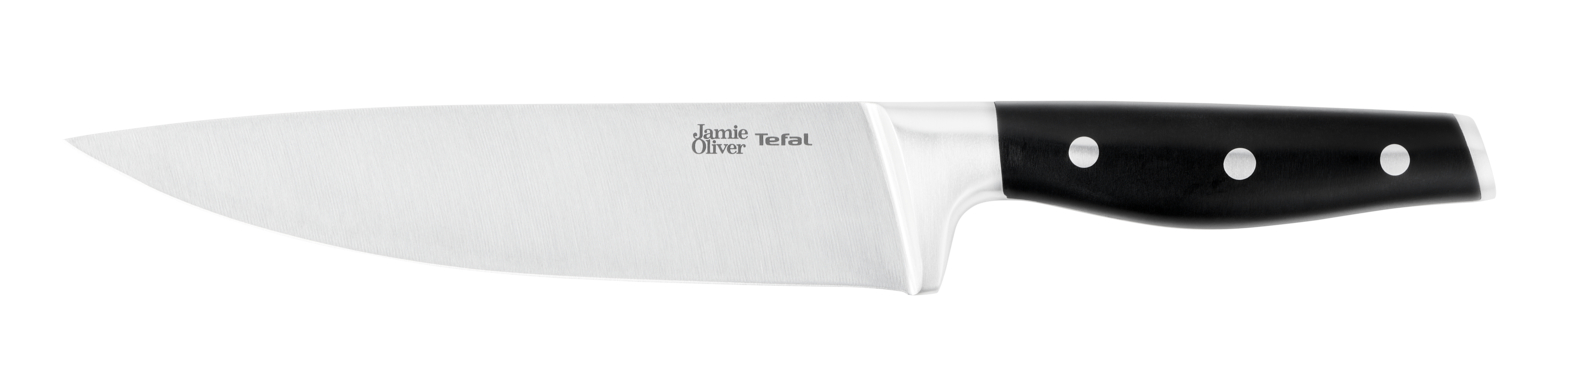 Шеф-нож Jamie Oliver 20 см K2670144 нож сантоку jamie oliver 18 см k2671844